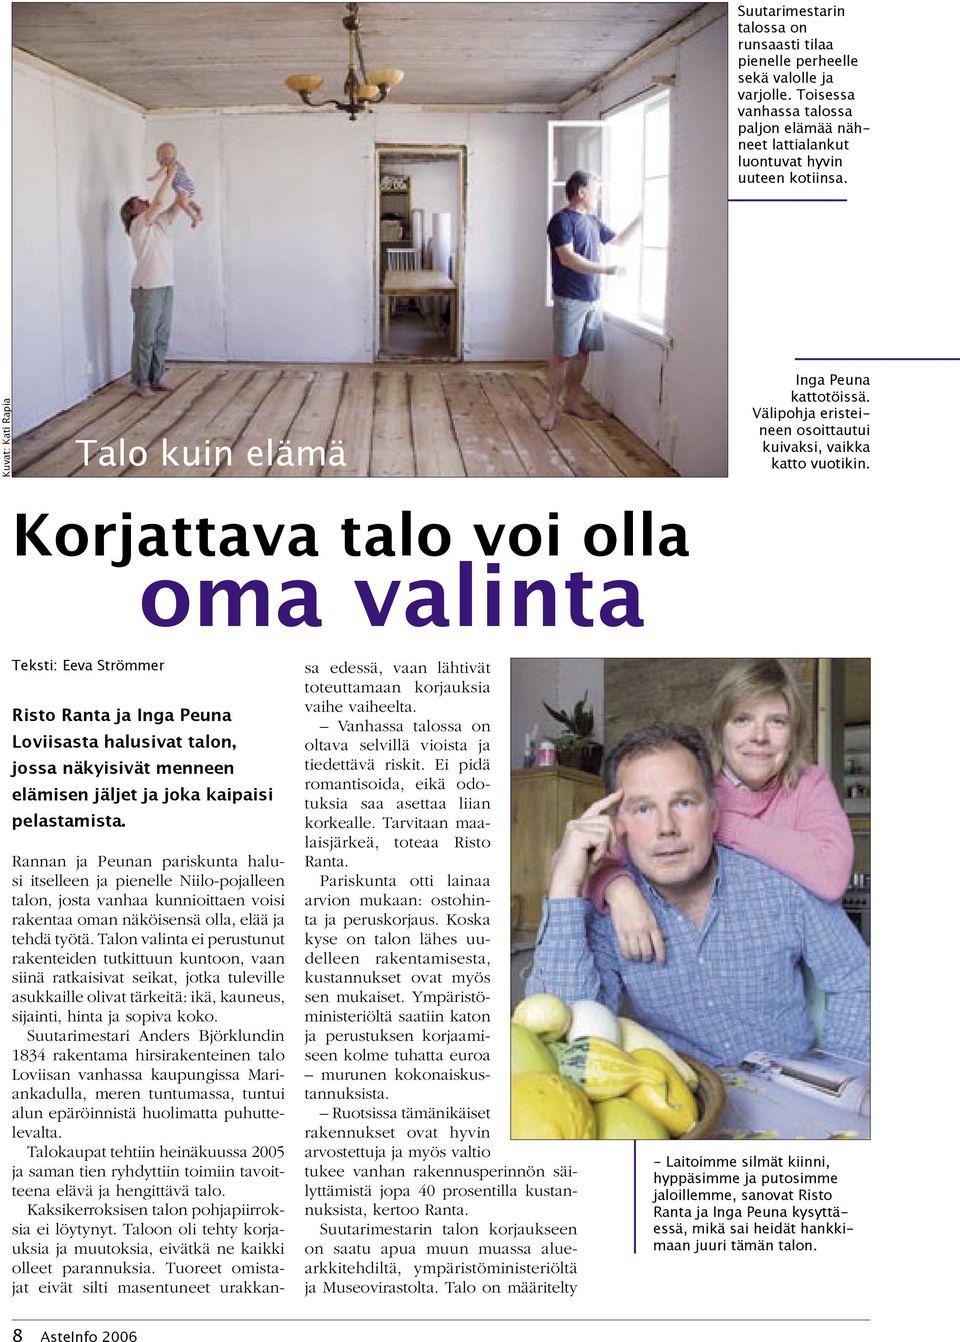 Korjattava talo voi olla oma valinta Teksti: Eeva Strömmer Risto Ranta ja Inga Peuna Loviisasta halusivat talon, jossa näkyisivät menneen elämisen jäljet ja joka kaipaisi pelastamista.